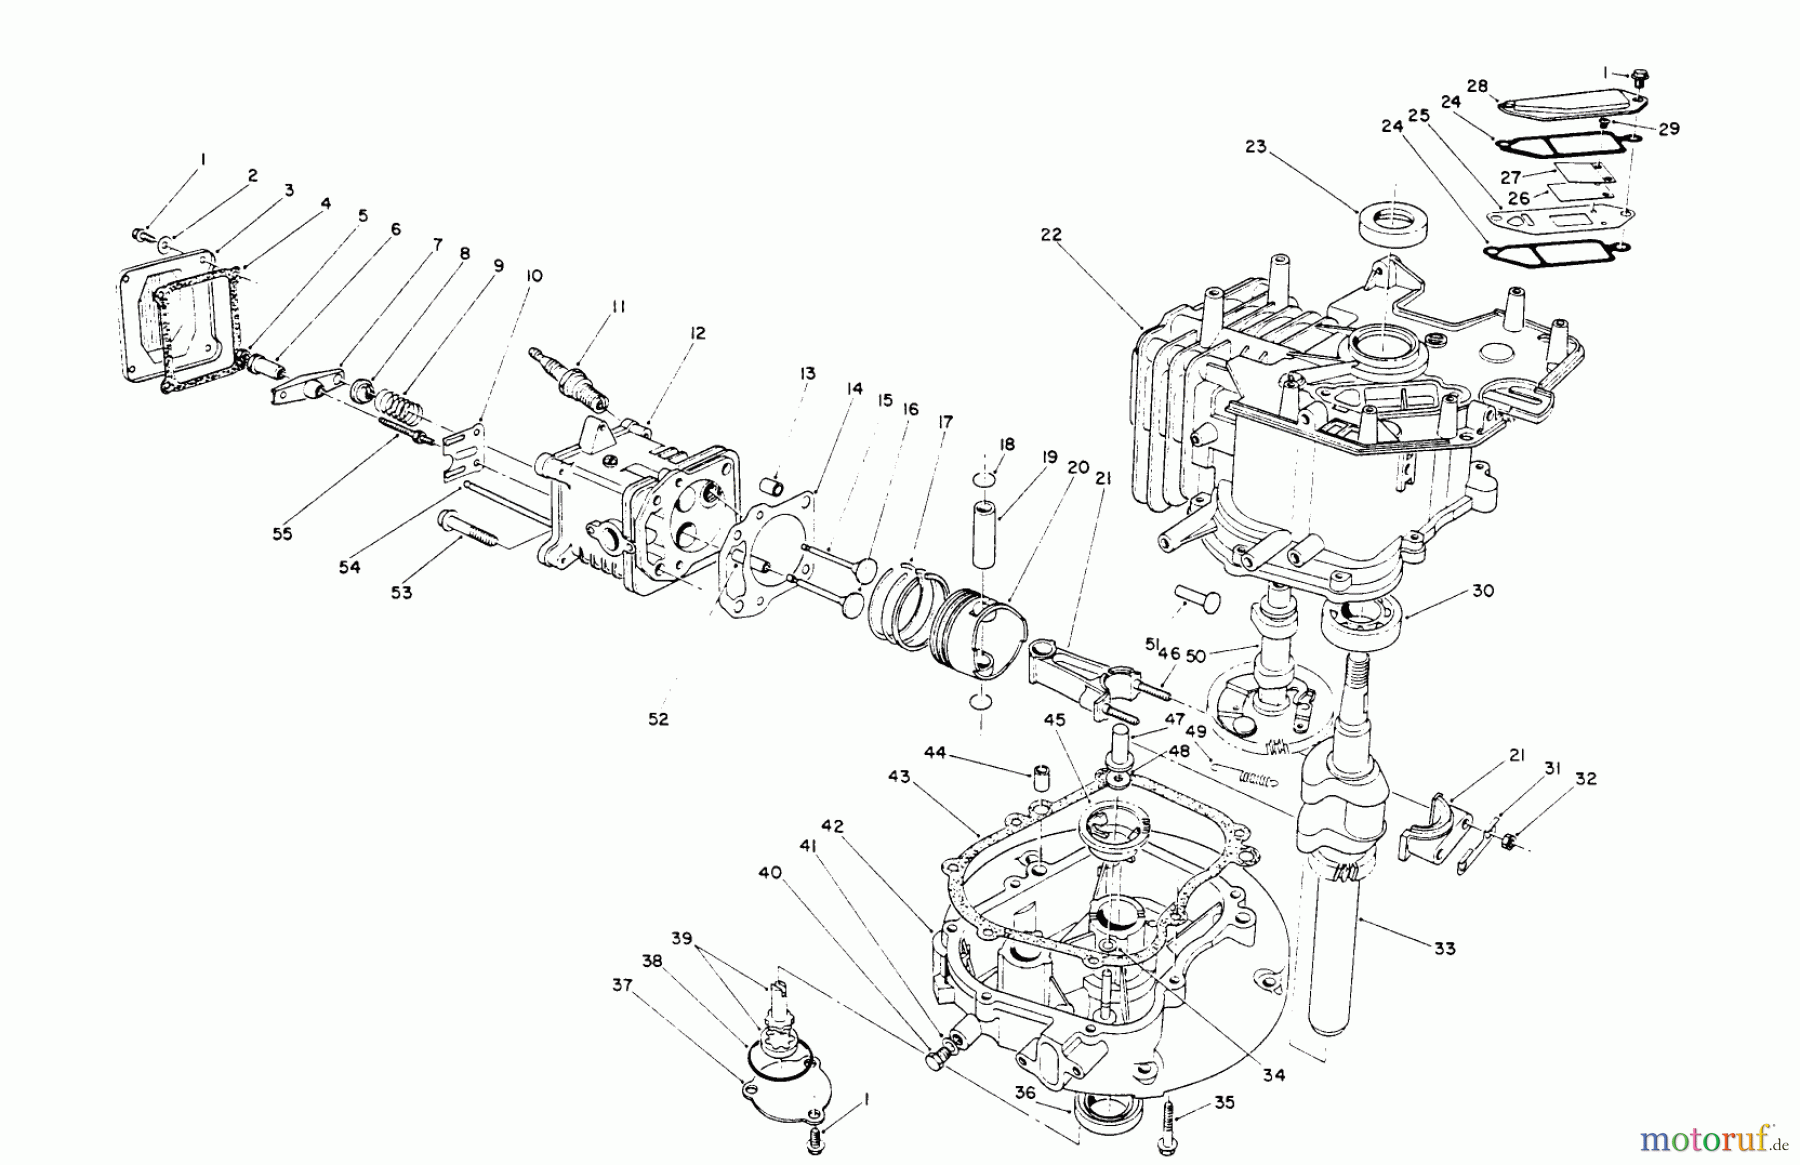  Toro Neu Mowers, Walk-Behind Seite 2 26625BG - Toro Lawnmower, 1990 (0000001-0999999) CRANKCASE ASSEMBLY (ENGINE NO. VMK9)